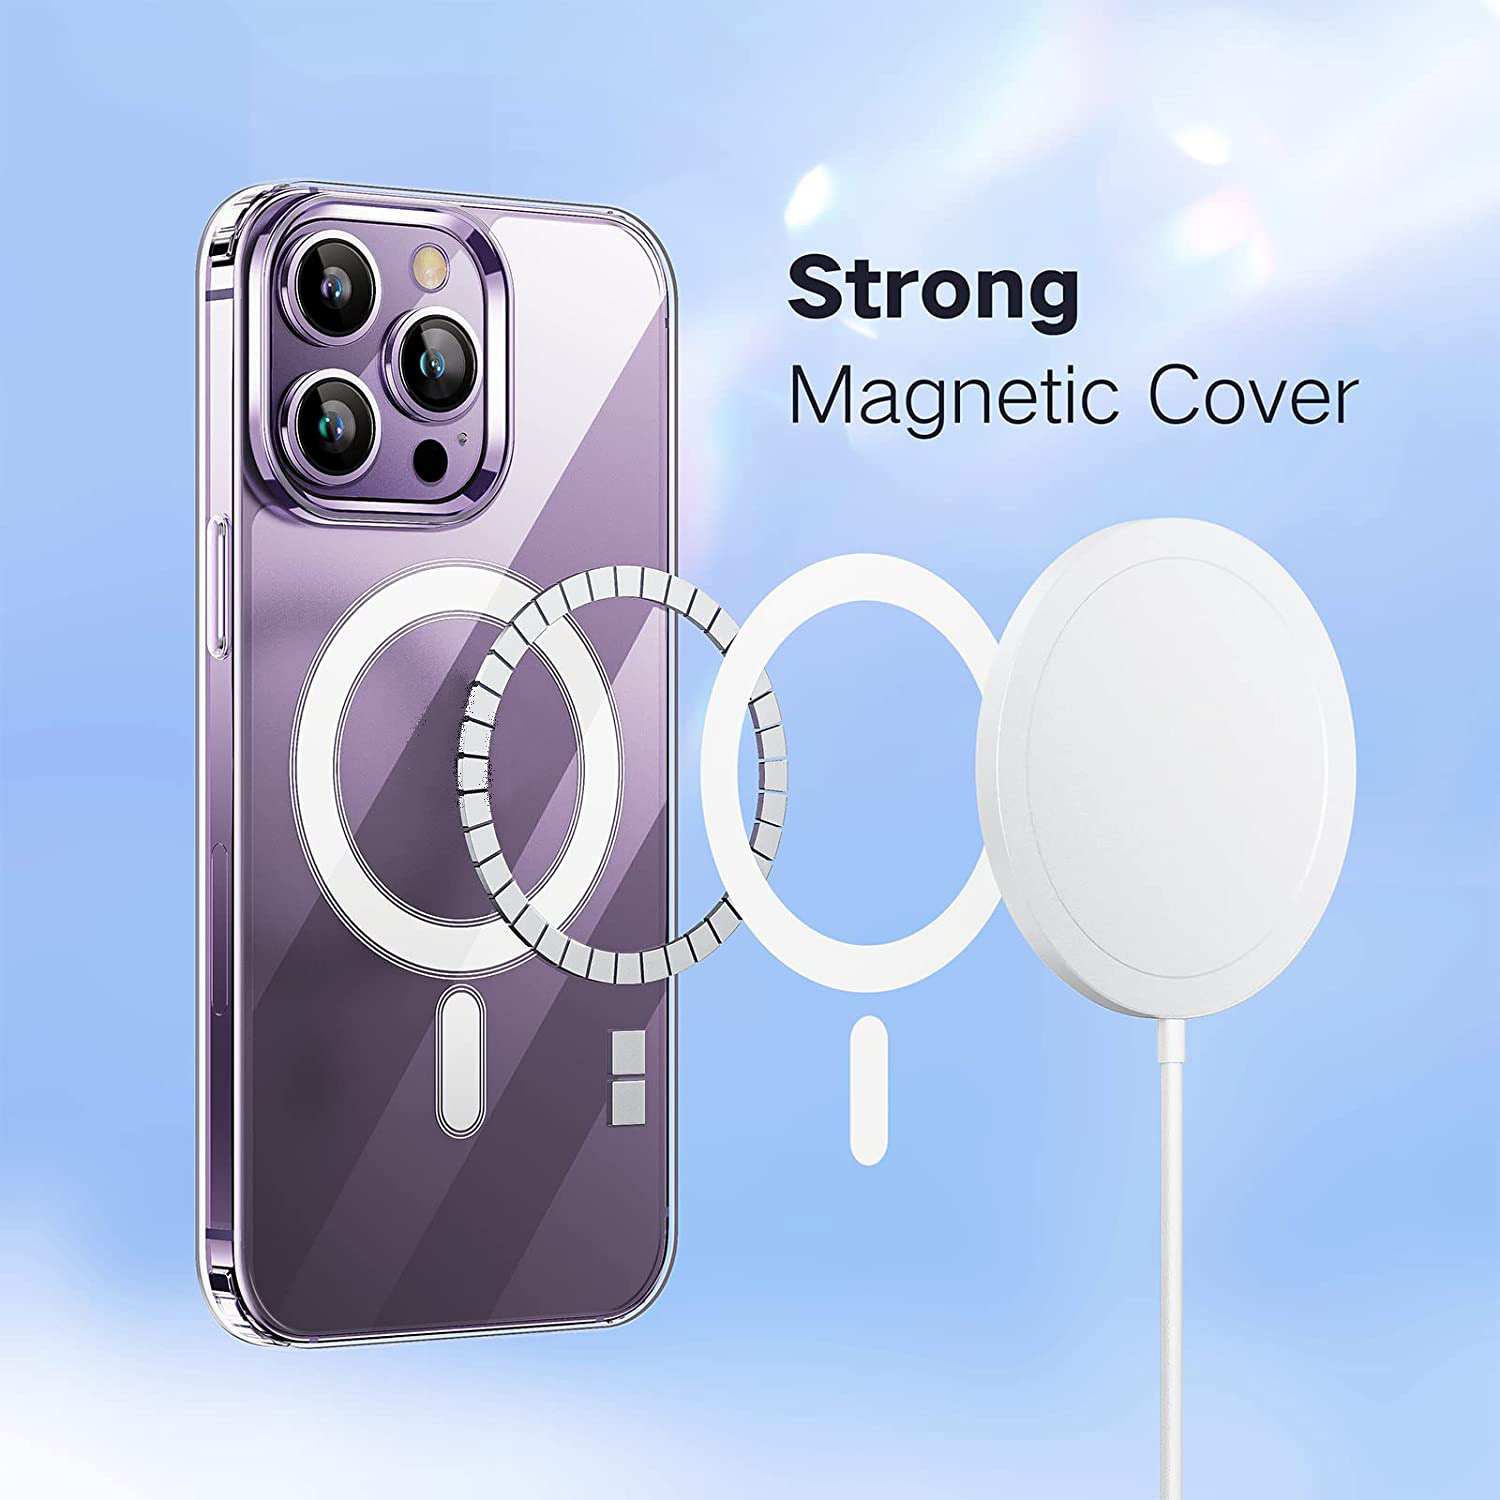 Ốp lưng chống sốc trong suốt hỗ trợ sạc Maqsafe cho iPhone 14 Pro Max (6.7 inch) hiệu Memumi Maqsafe Magetic Case siêu mỏng 1.5mm, độ trong tuyệt đối, chống trầy xước, chống ố vàng, tản nhiệt tốt - hàng nhập khẩu